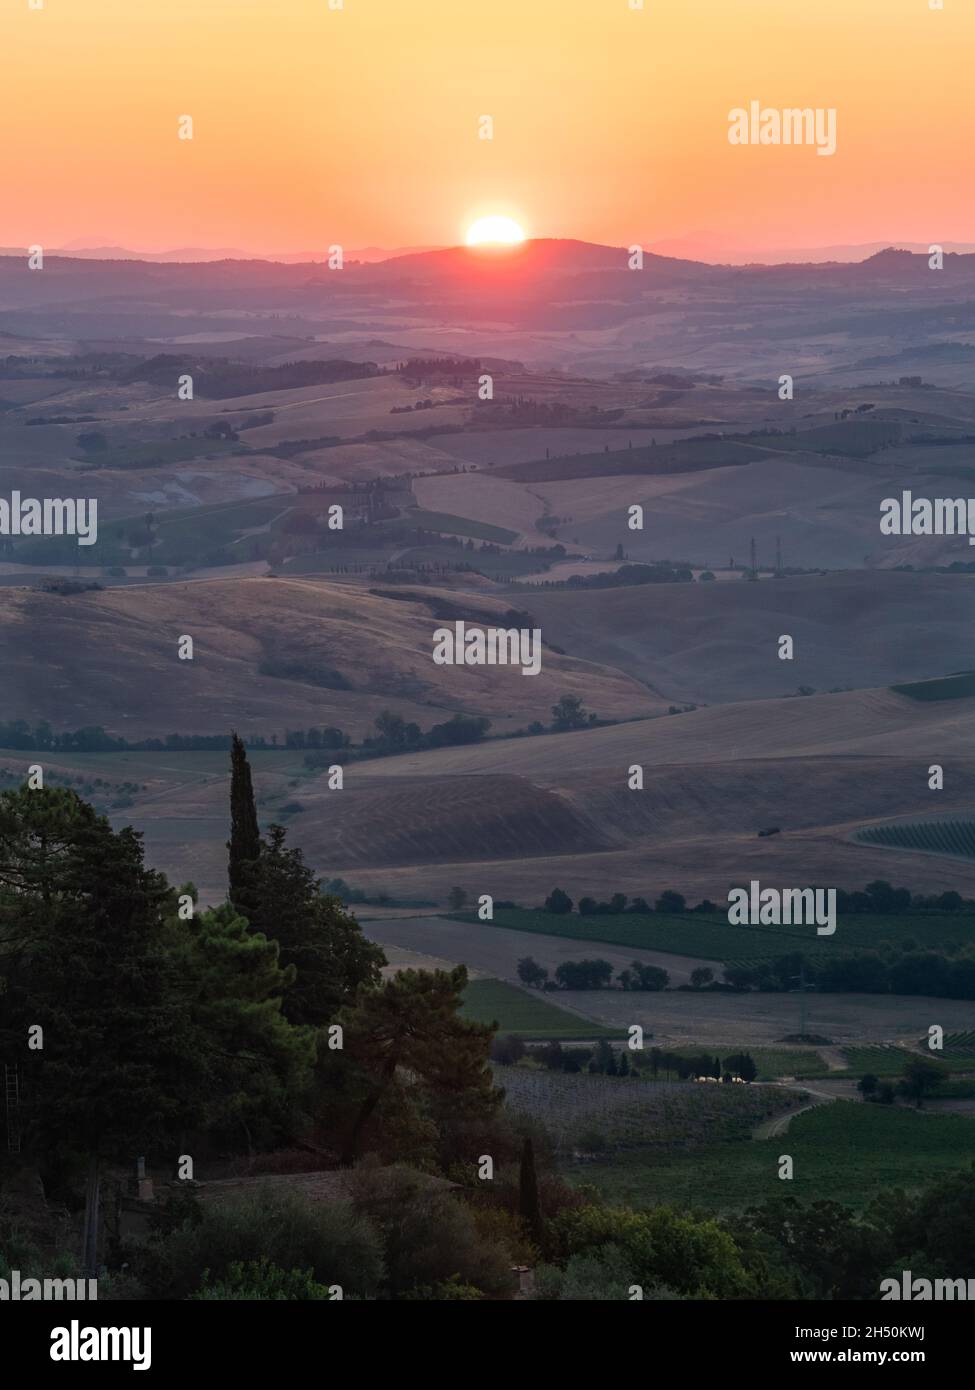 Lever de soleil dans les collines de Montalcino, Toscane, dans la région de Crete Senesi, orientation verticale Banque D'Images